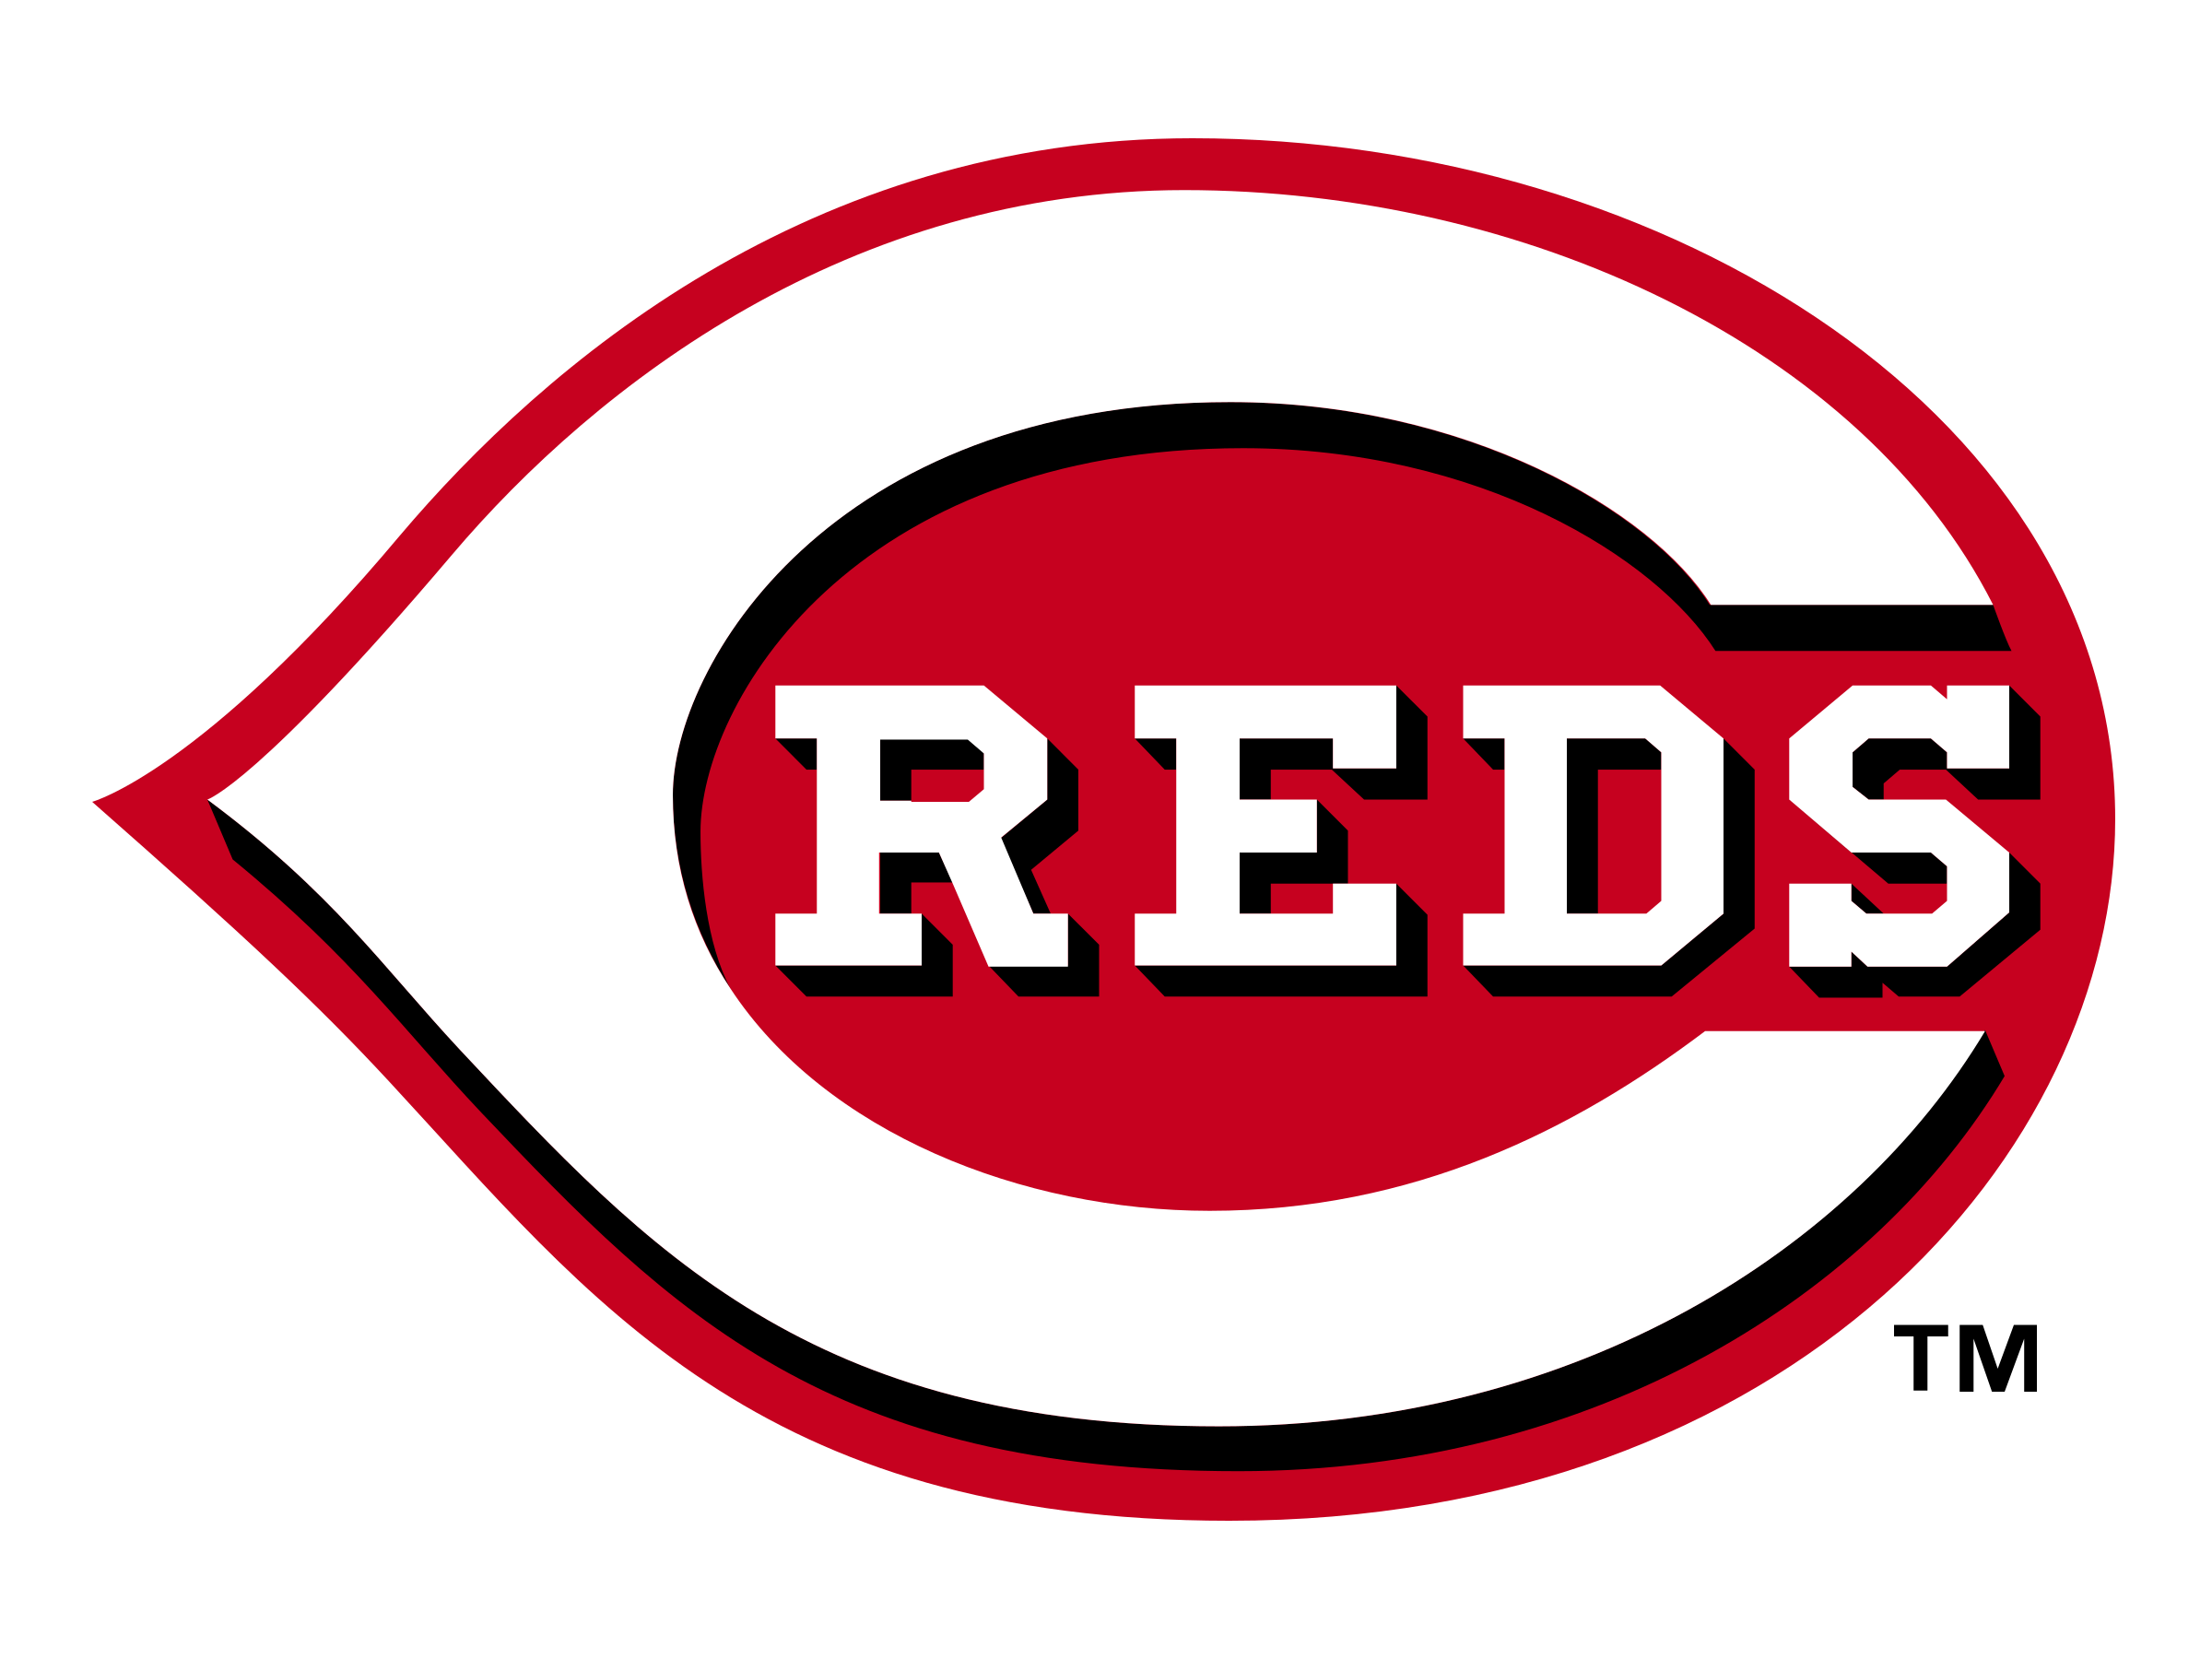 Cincinnati Reds Odds & Bets